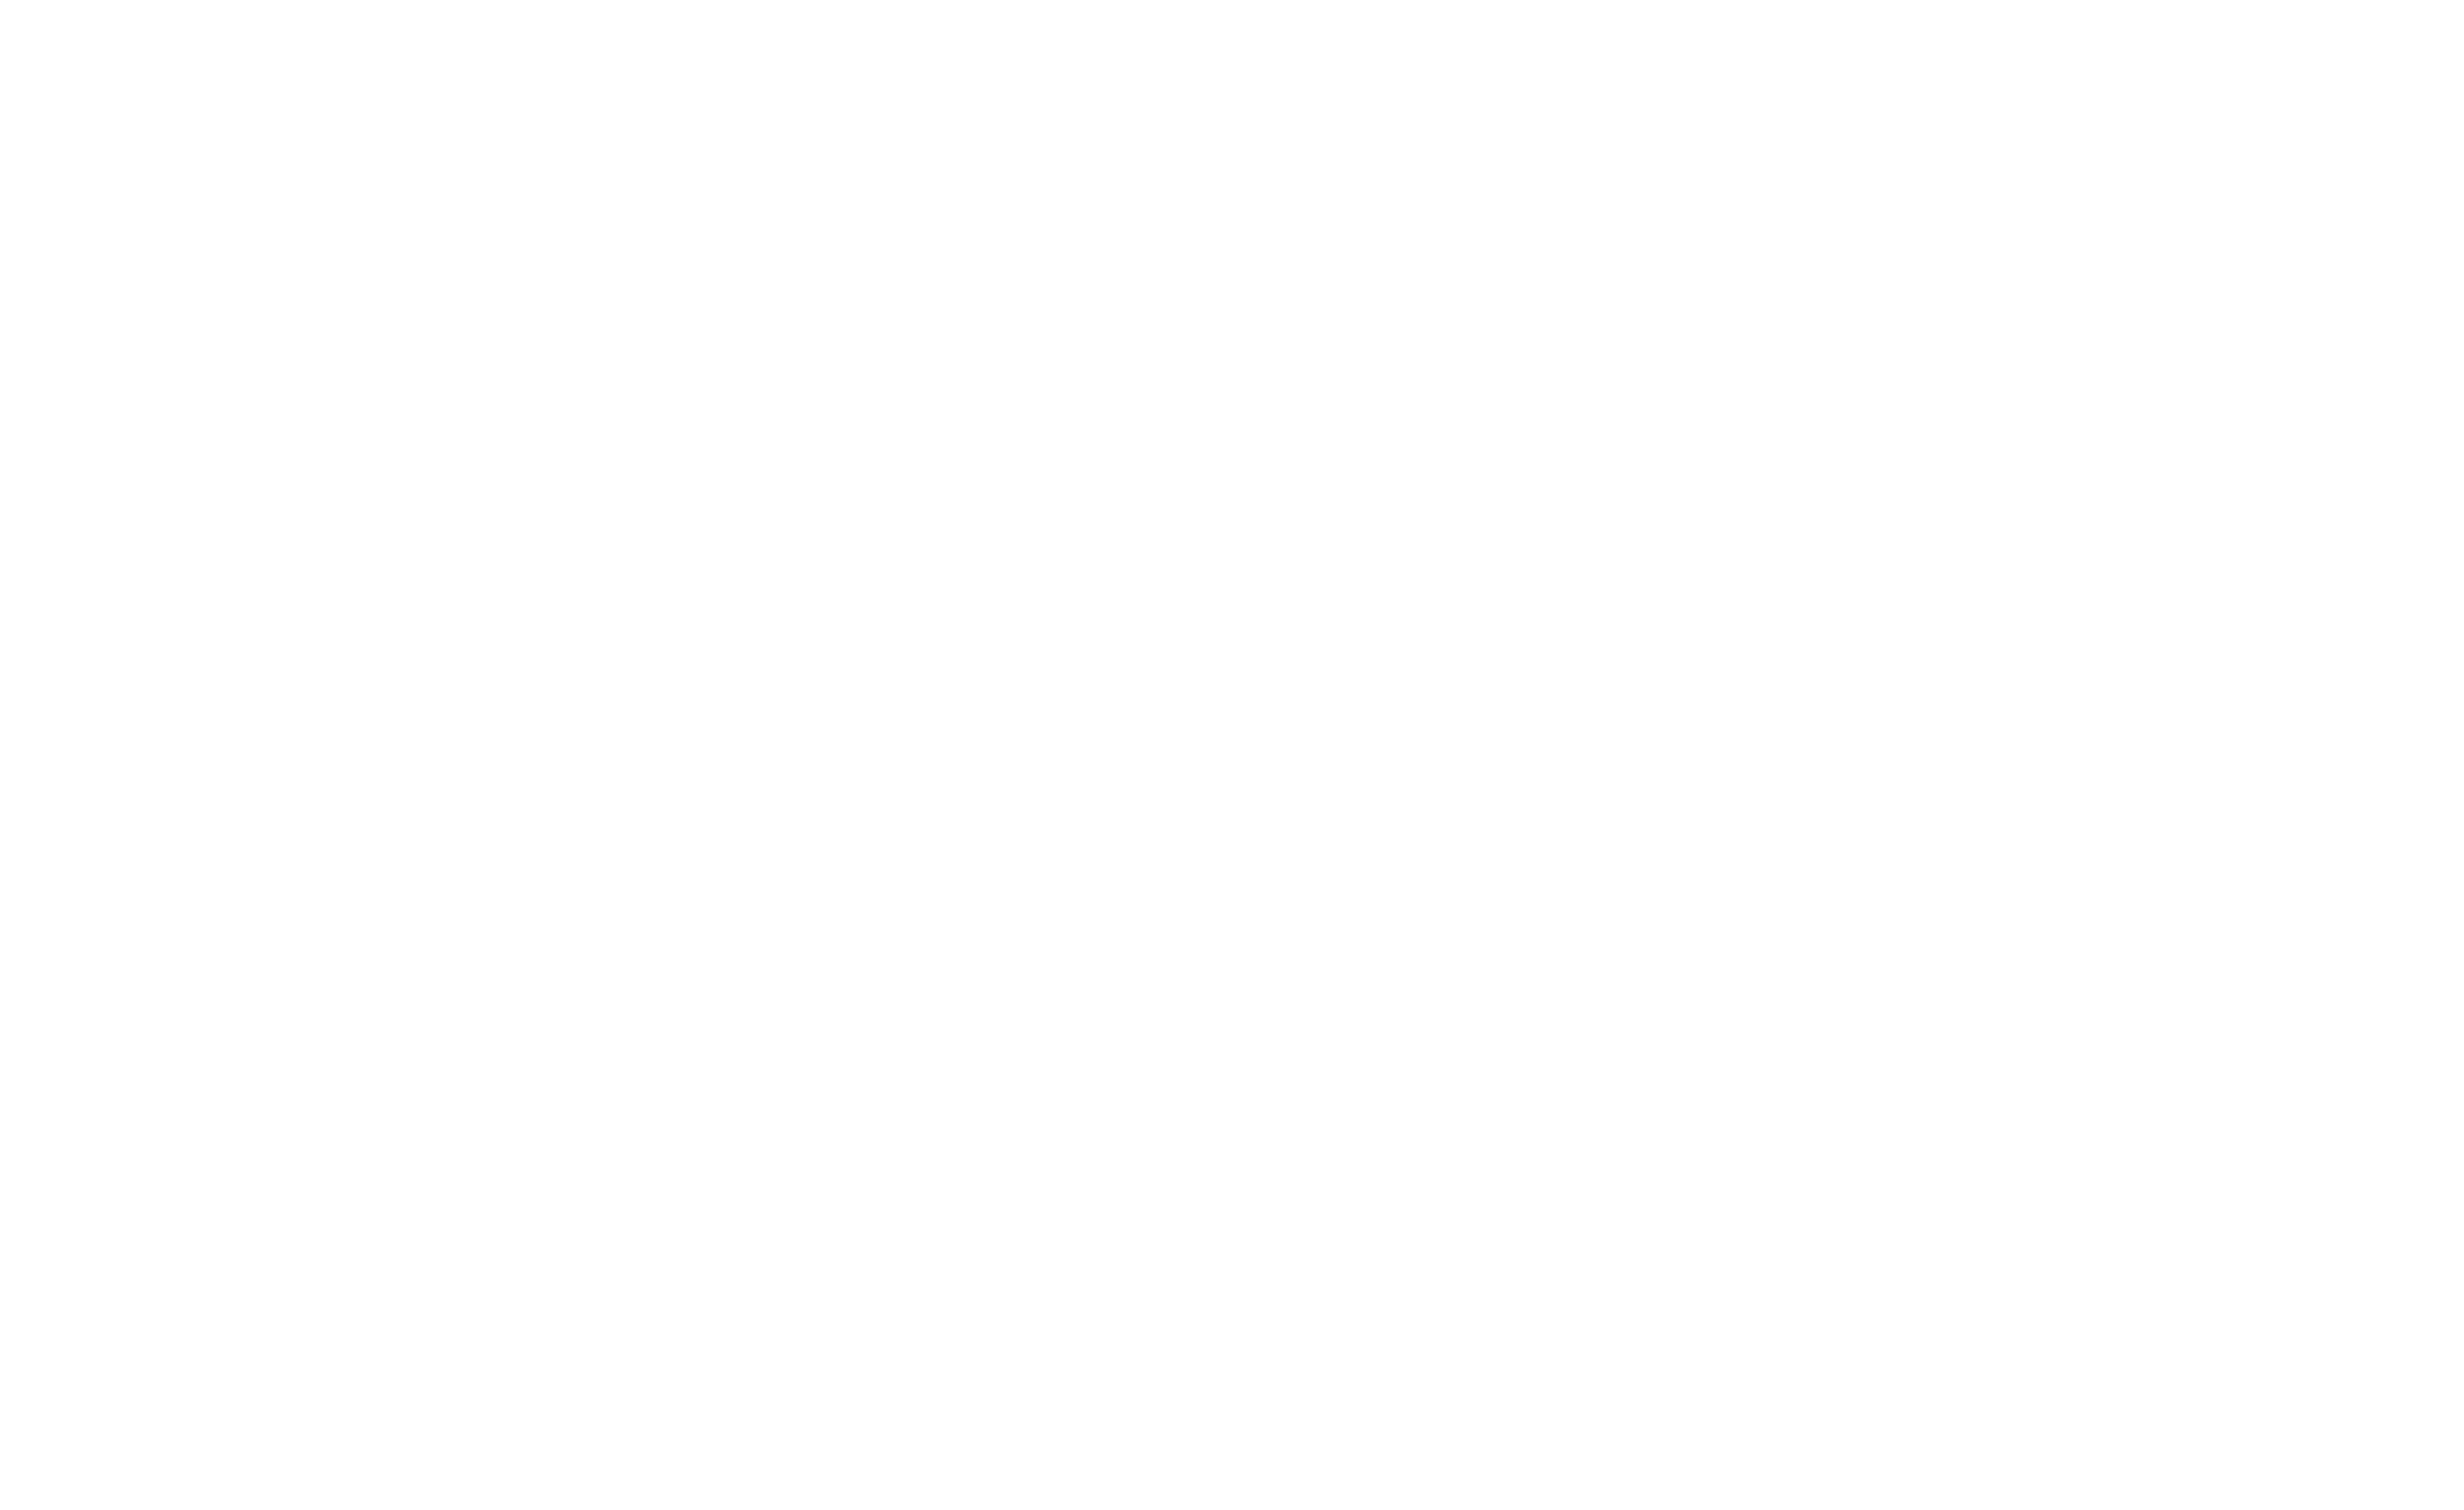 有限会社三盛運輸 Welcome to Our Corporate Site